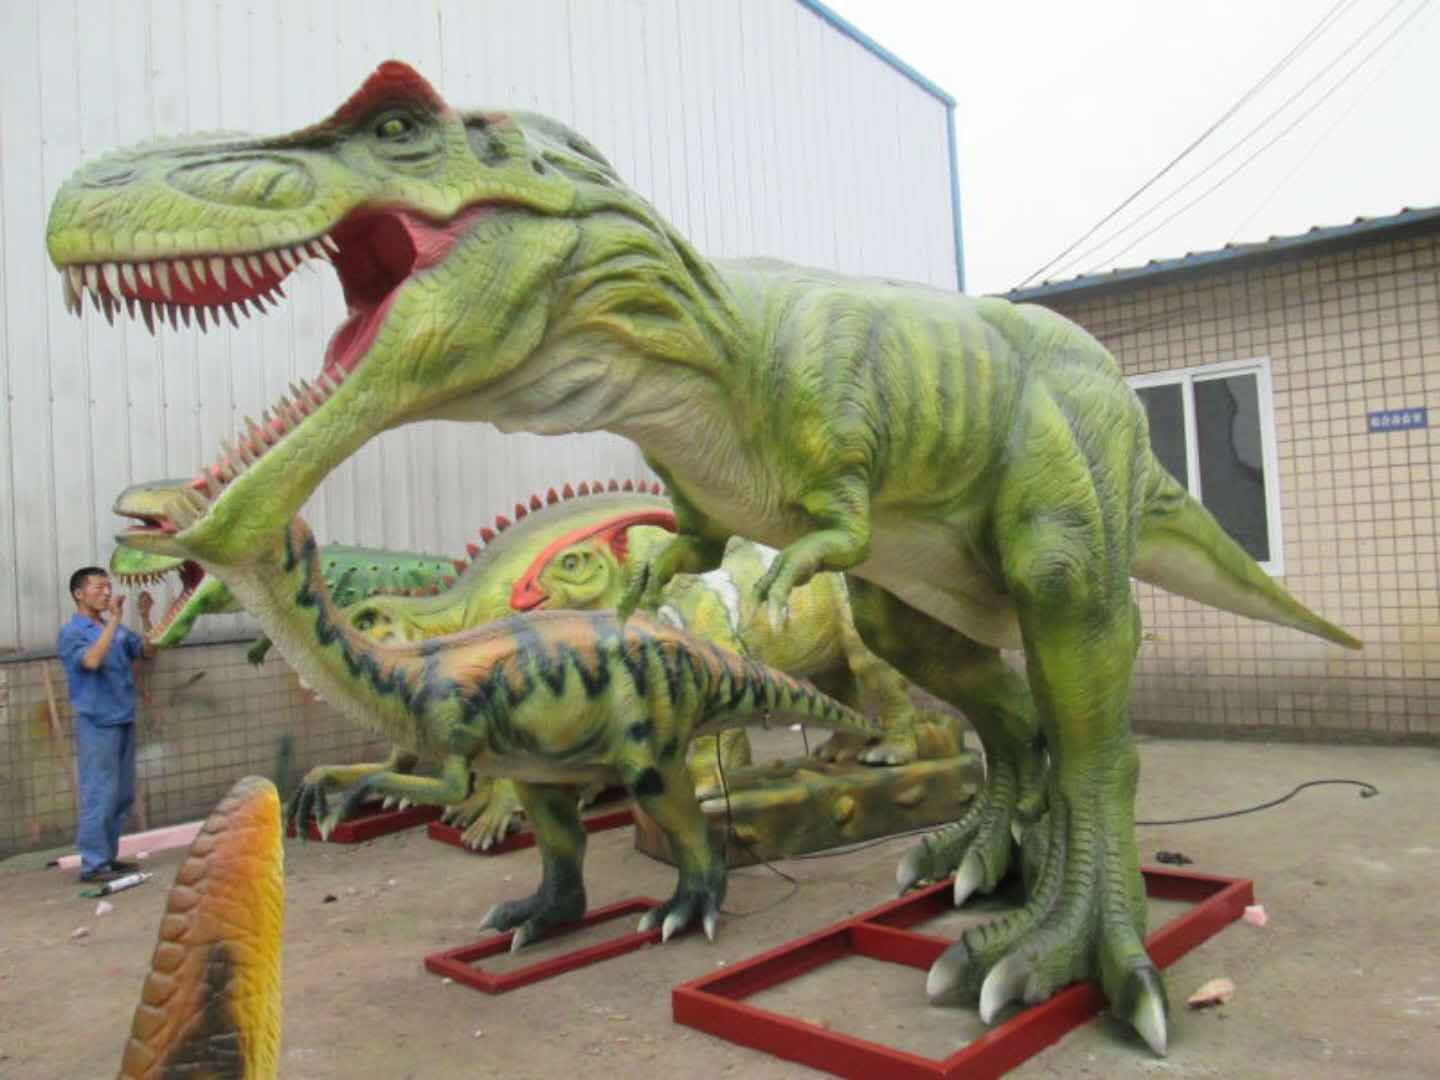 仿真恐龙出租仿真恐龙模型出租侏罗纪恐龙世界模型出租租赁仿真恐龙出租仿真恐龙模型出租